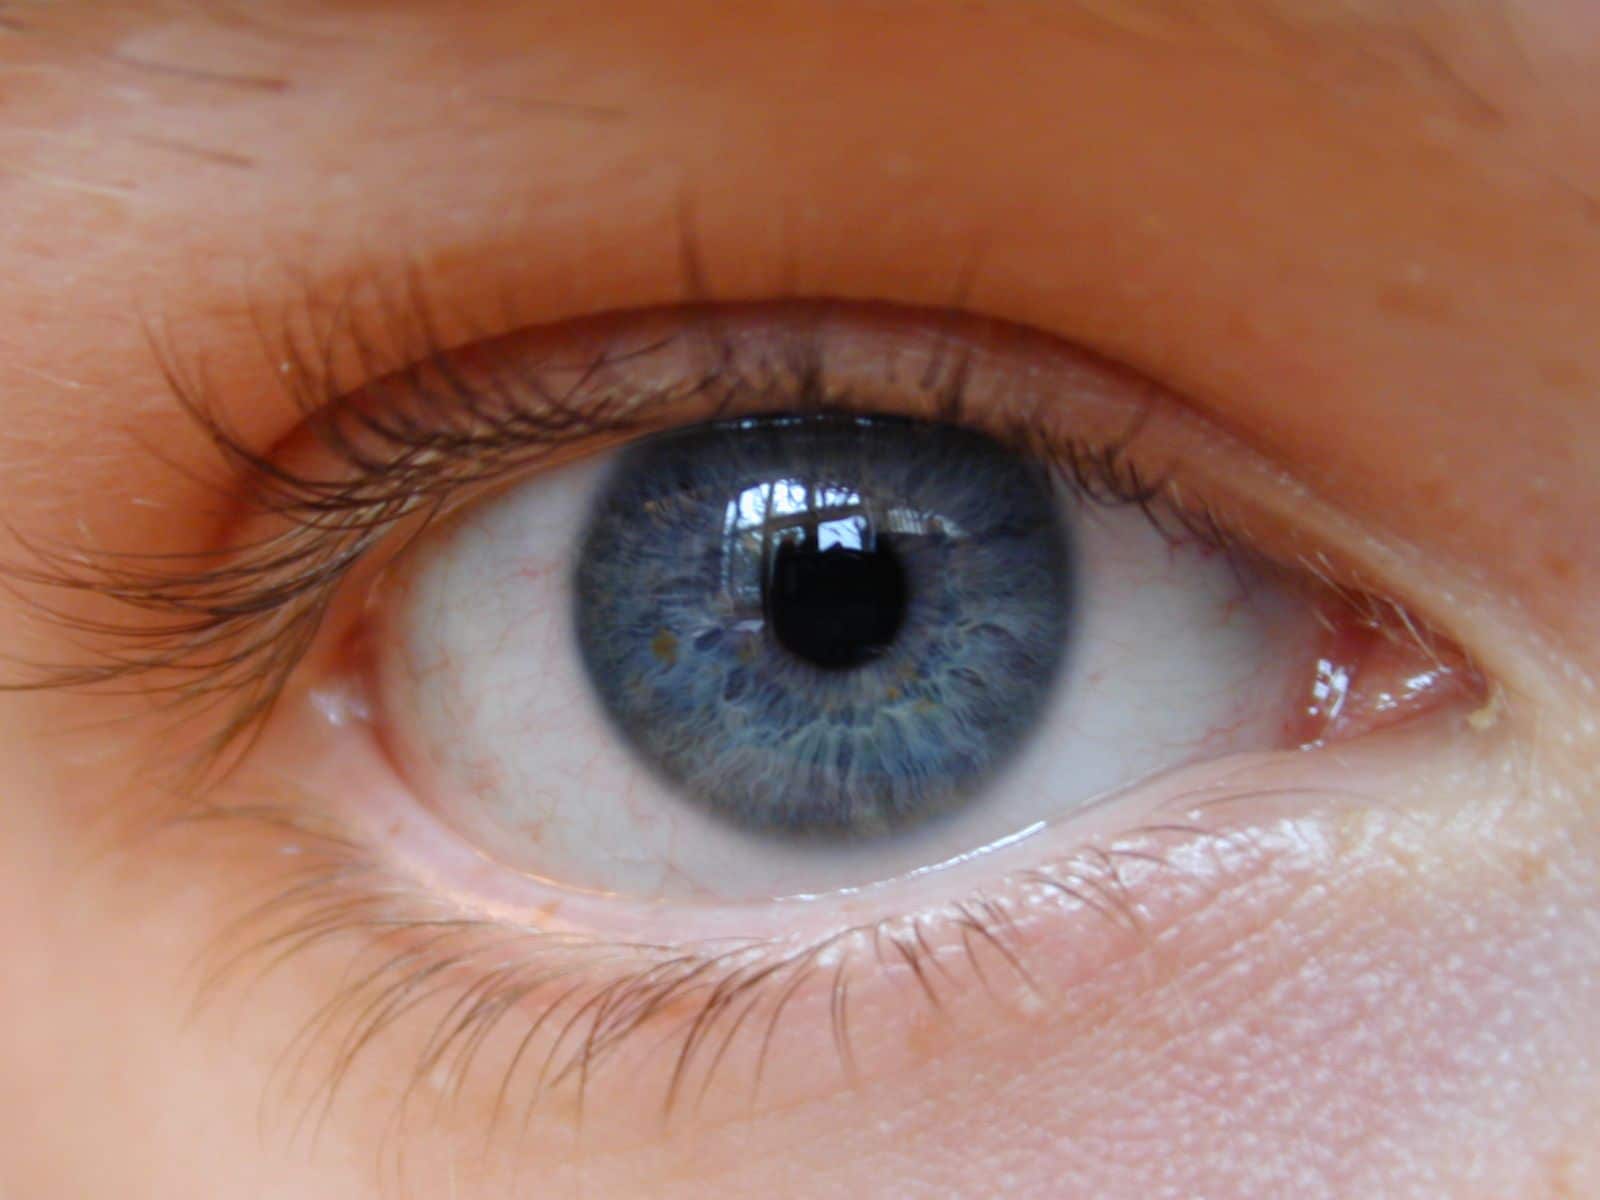 Entérate cómo proteger tus ojos contra enfermedades